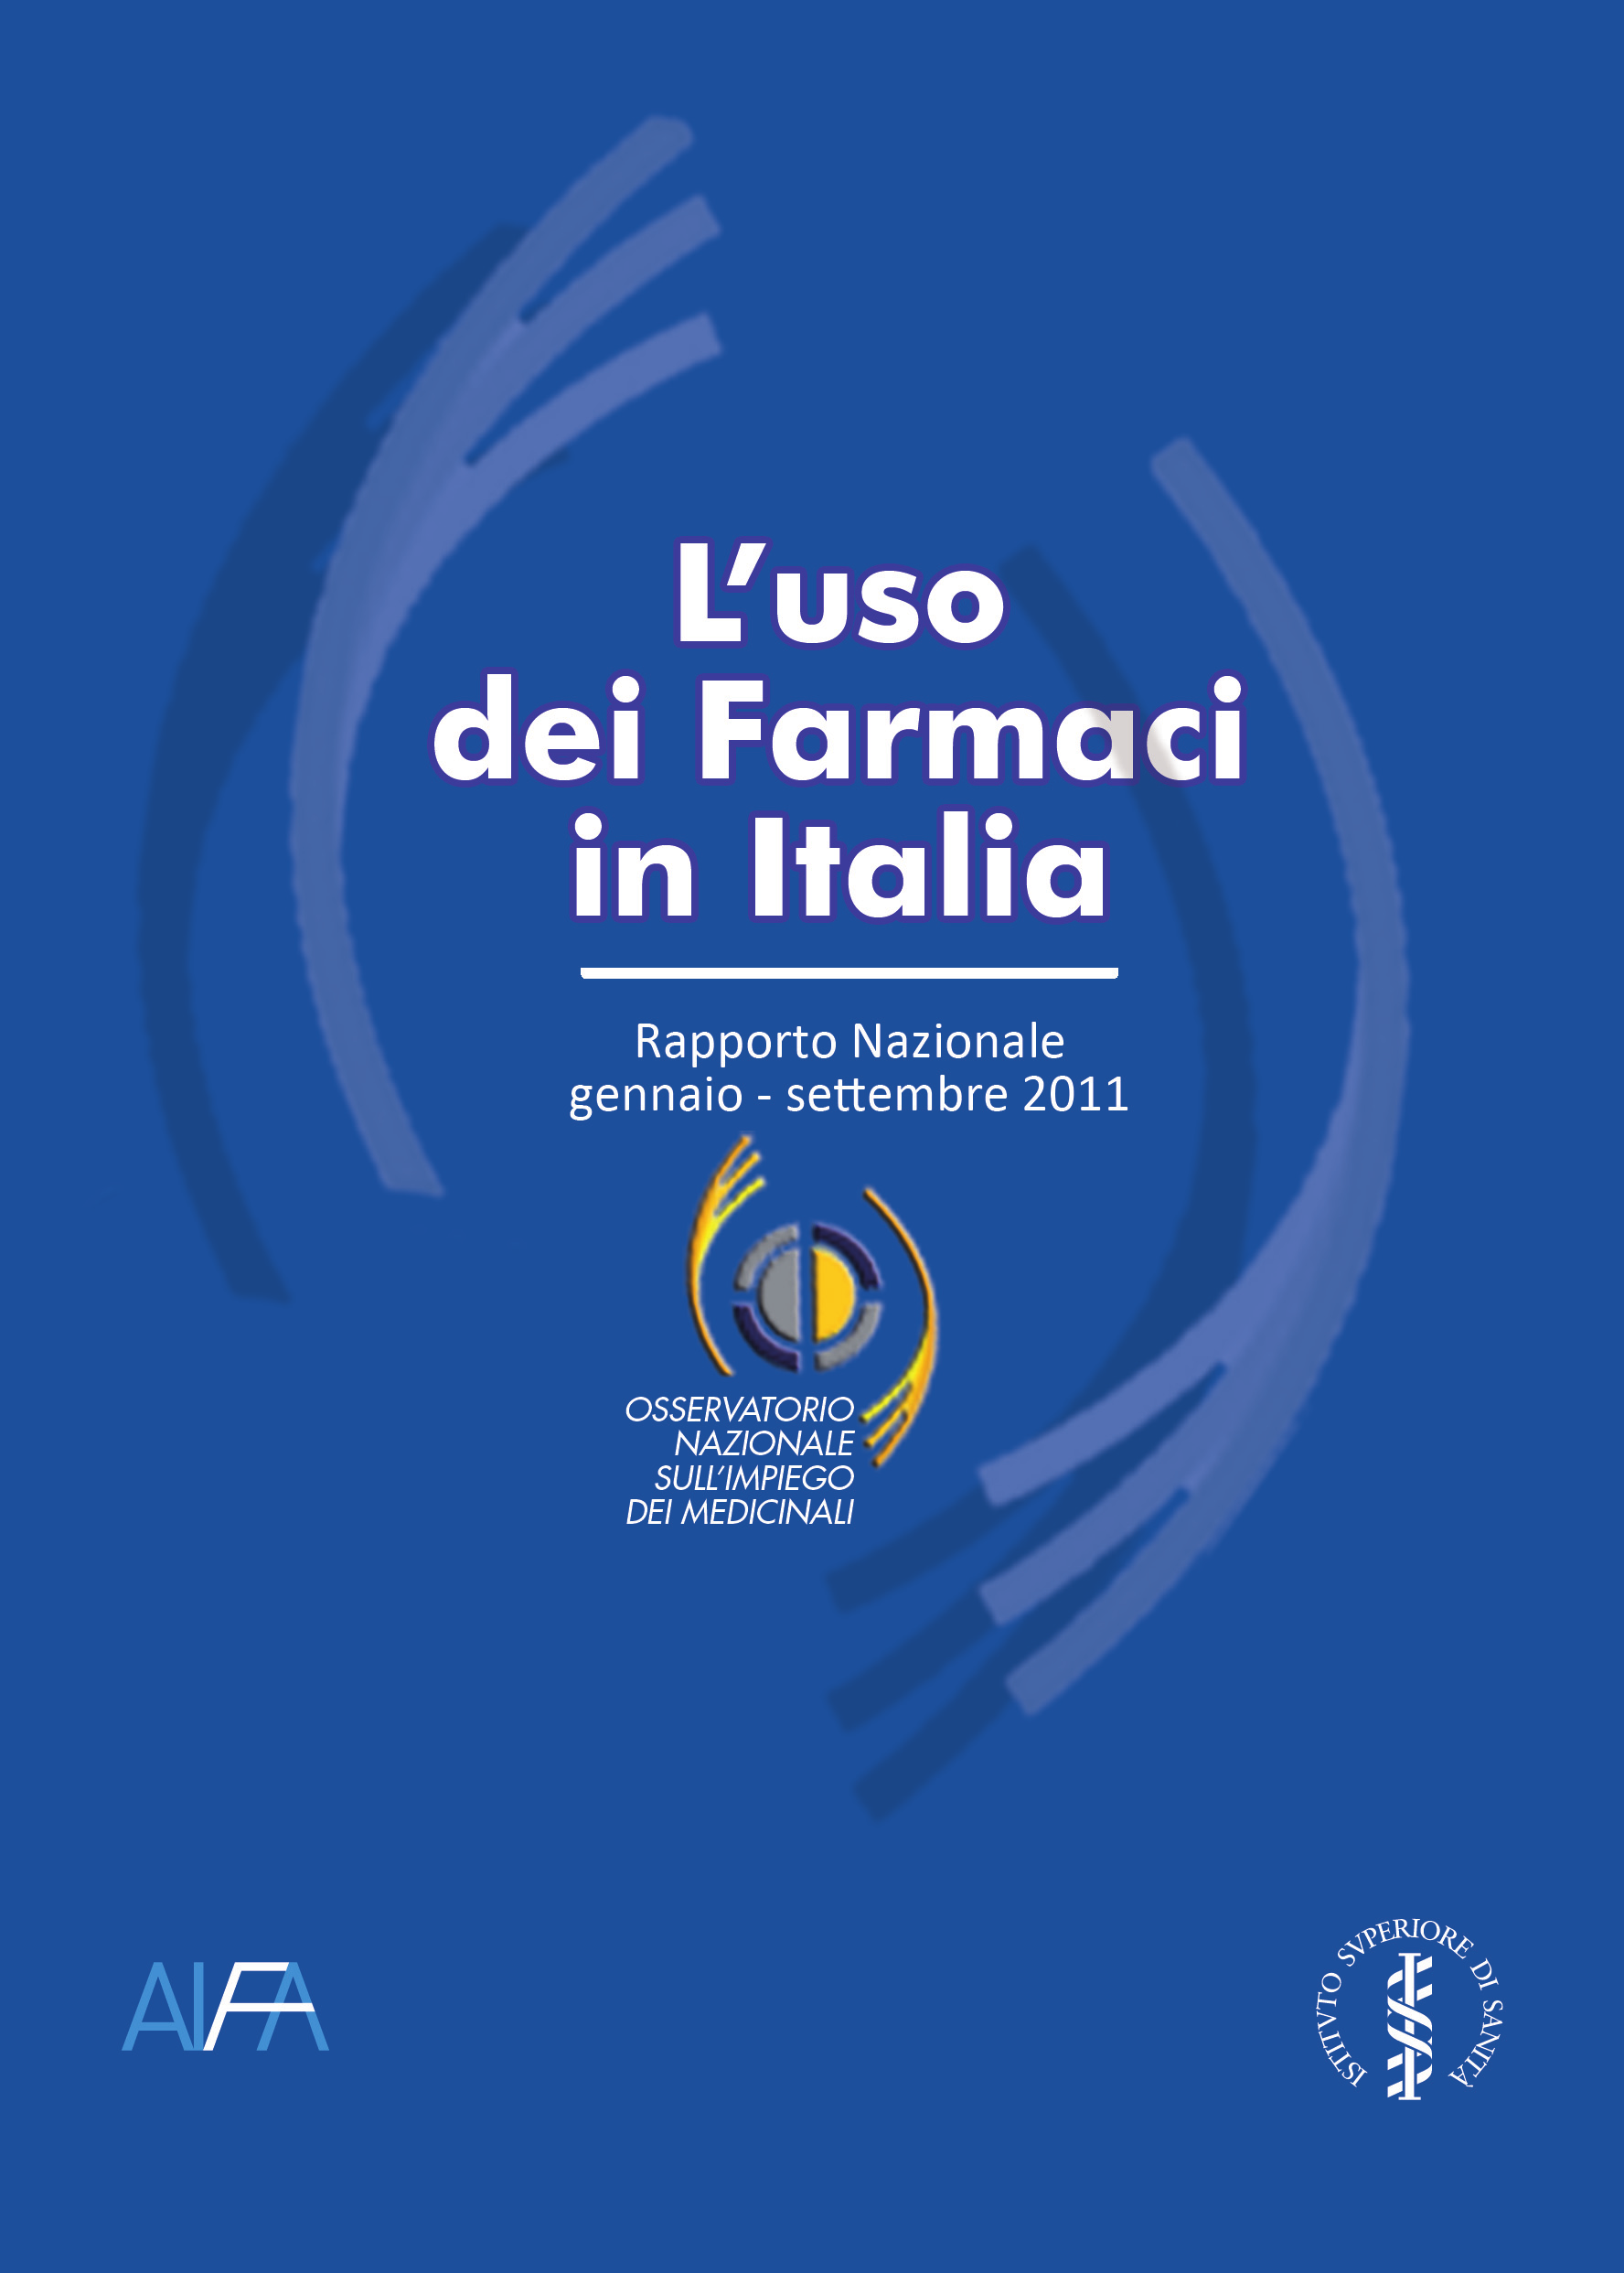 Rapporto OsMed gennaio-settembre 2011 Un analisi sistematica della prescrizione di farmaci in Italia in termini di consumi, spesa, tipologia di farmaci e caratteristiche degli utilizzatori.